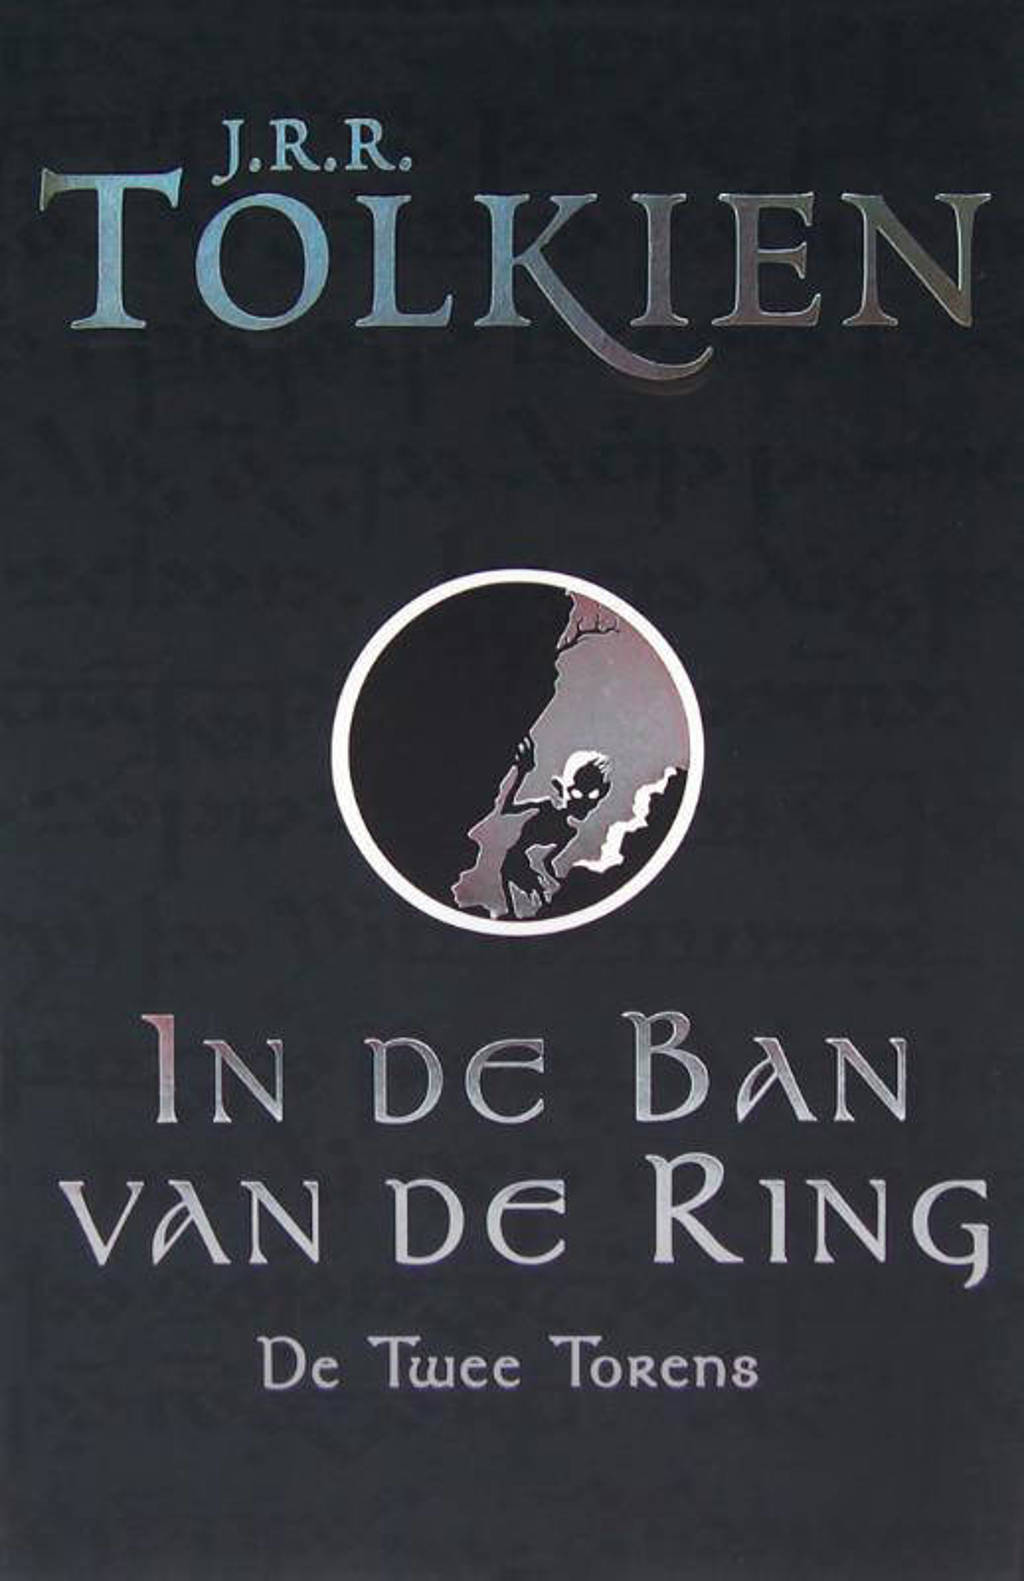 In de ban van de ring: De twee torens - J.R.R. Tolkien